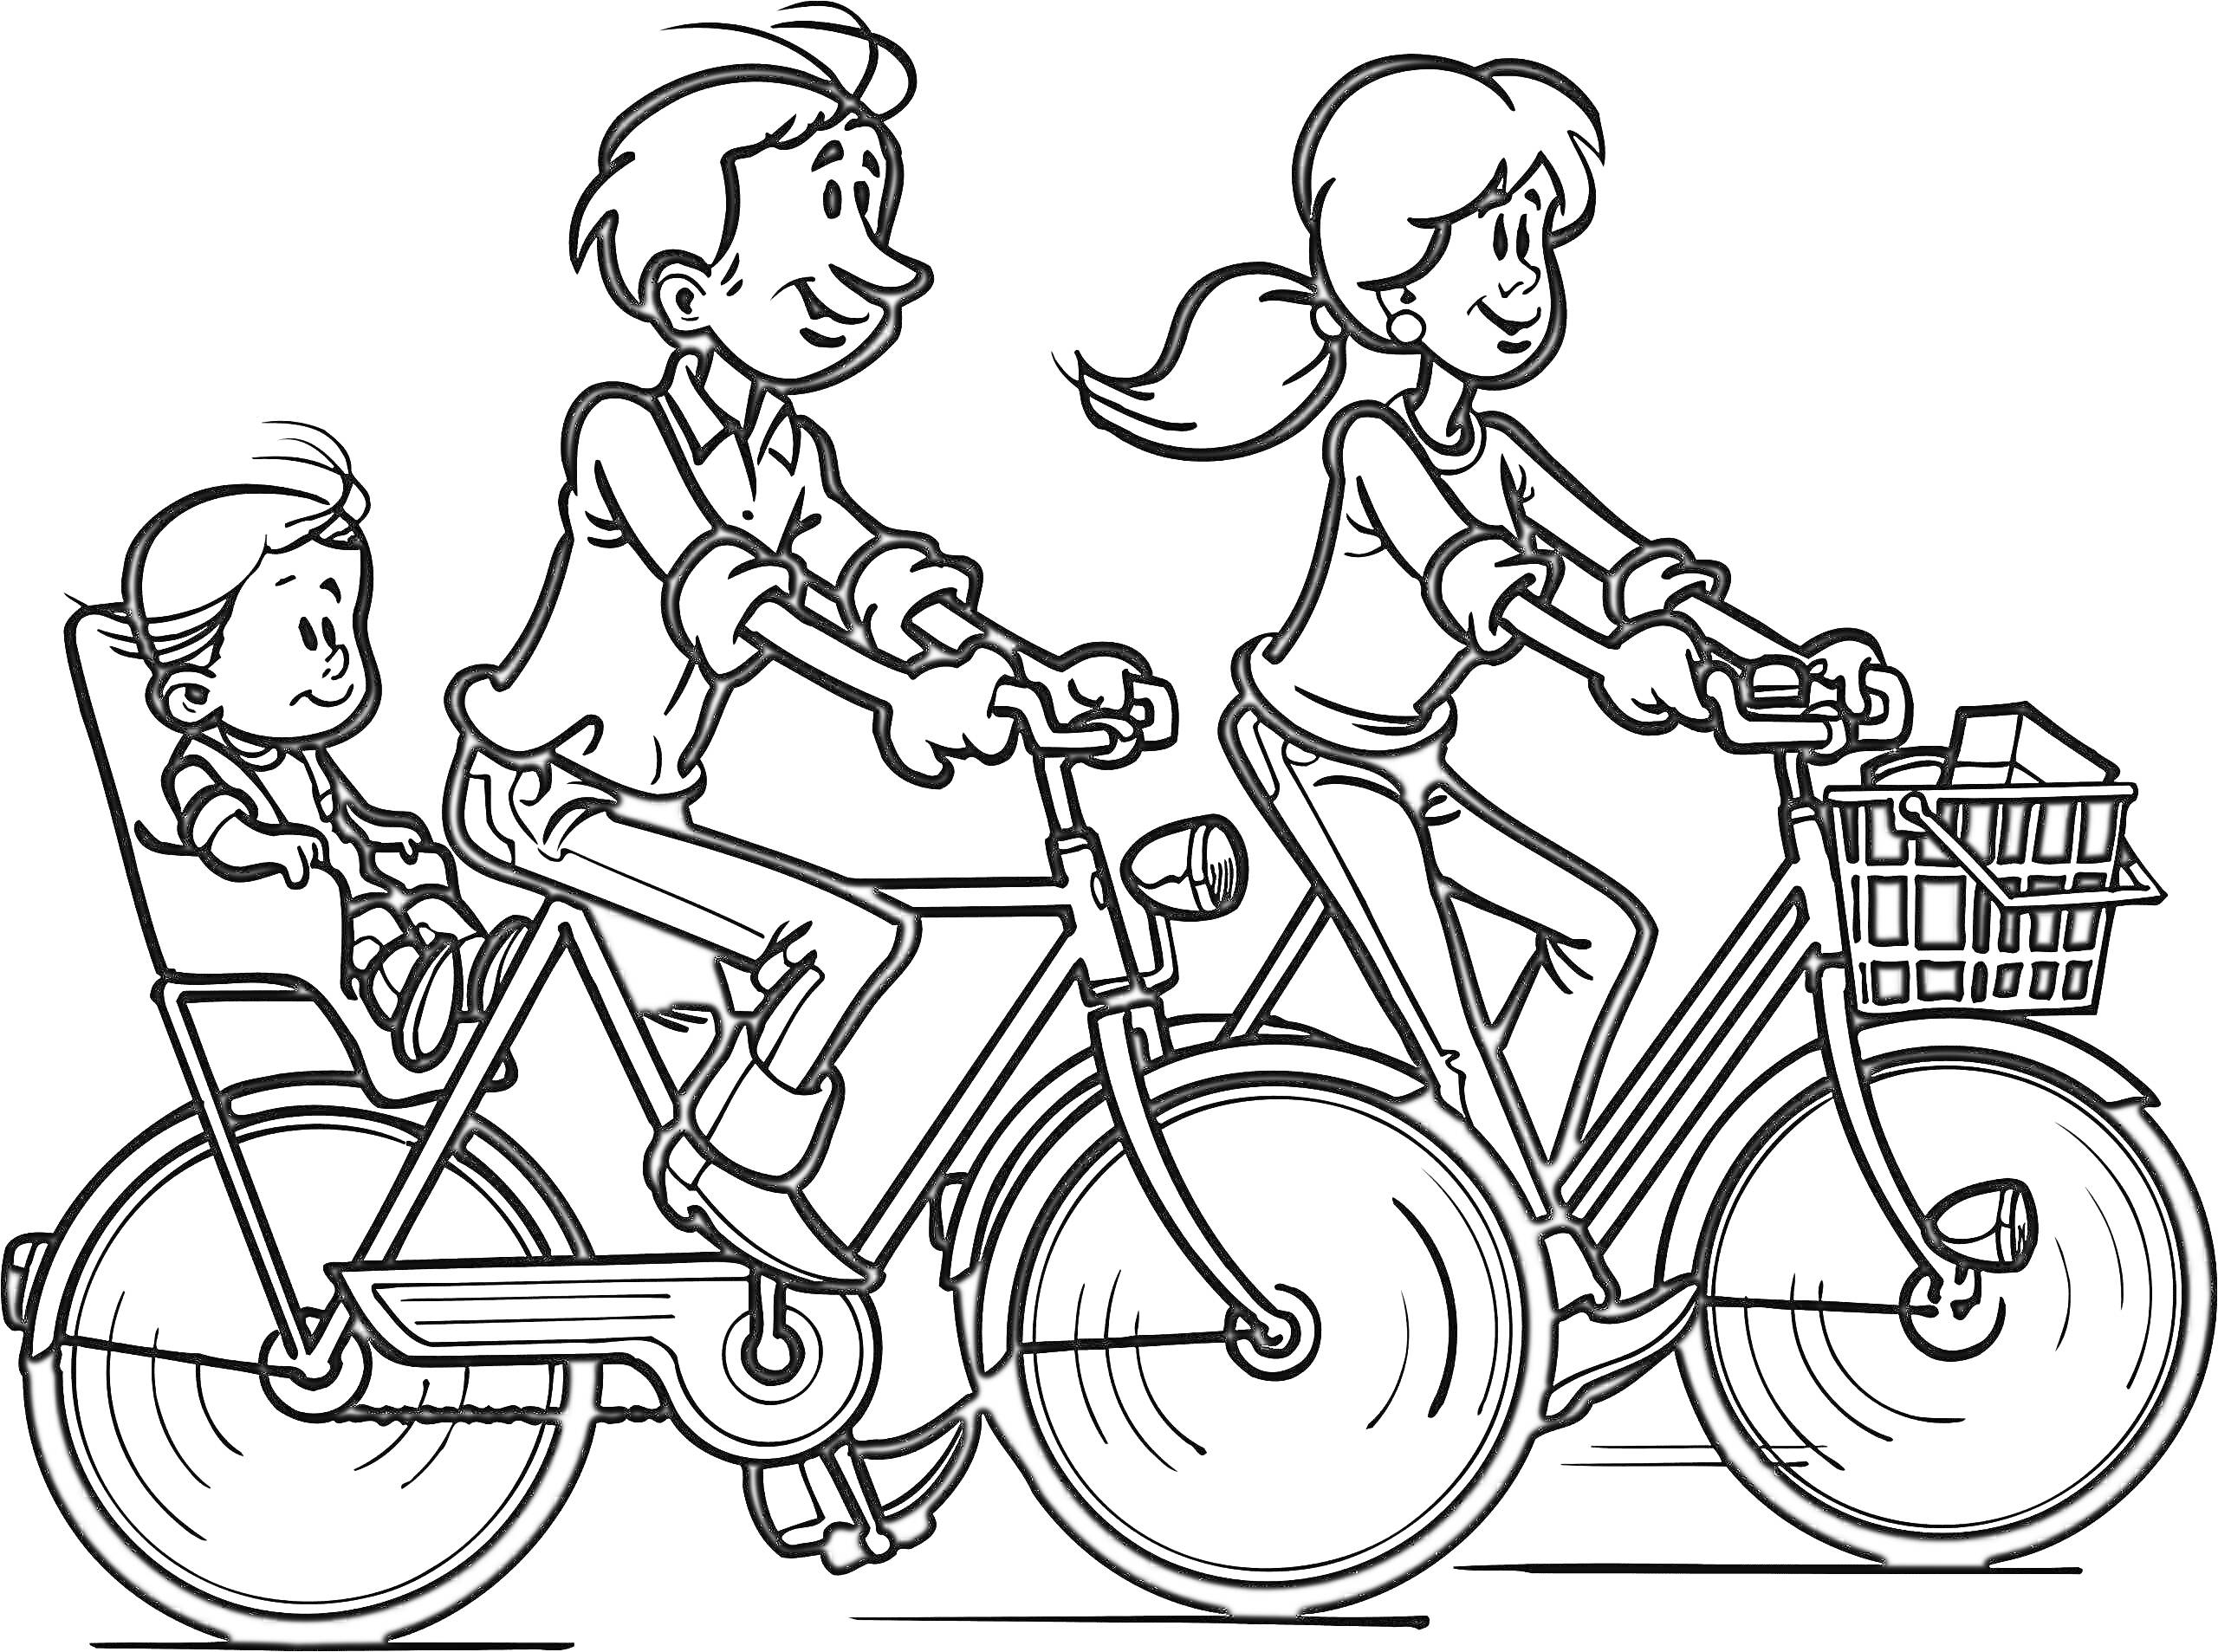 Раскраска Семья на велосипедах - мама на велосипеде с корзиной, папа на велосипеде с детским креслом, маленький ребенок в детском кресле